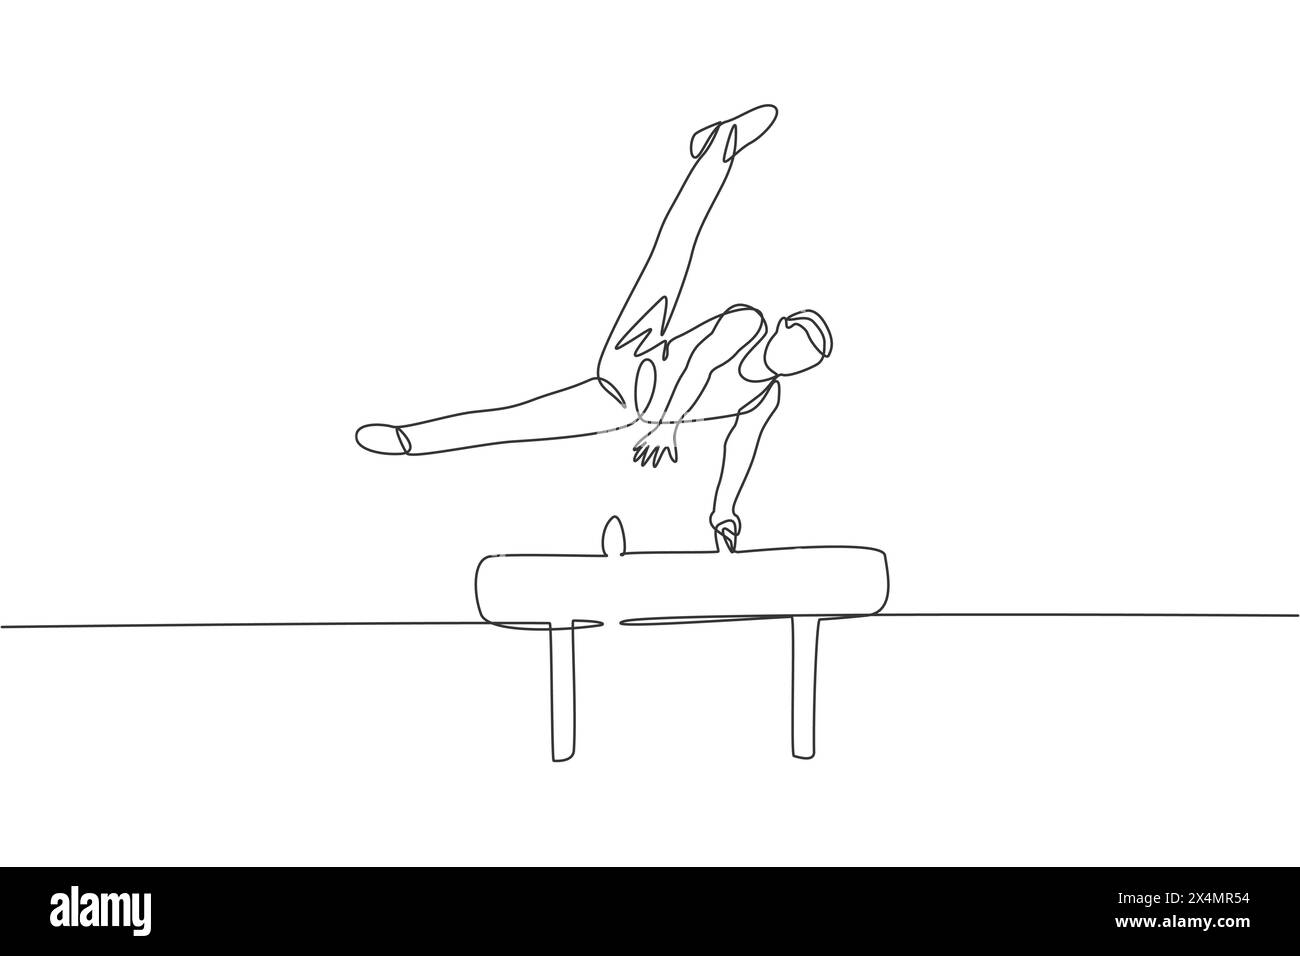 Eine durchgehende Linienzeichnung eines jungen Mannes, der beim Gymnastik Pommel ausübt. Turnersportler im Trikot. Gesunder Sport und aktives Konzept. Dynamische s Stock Vektor